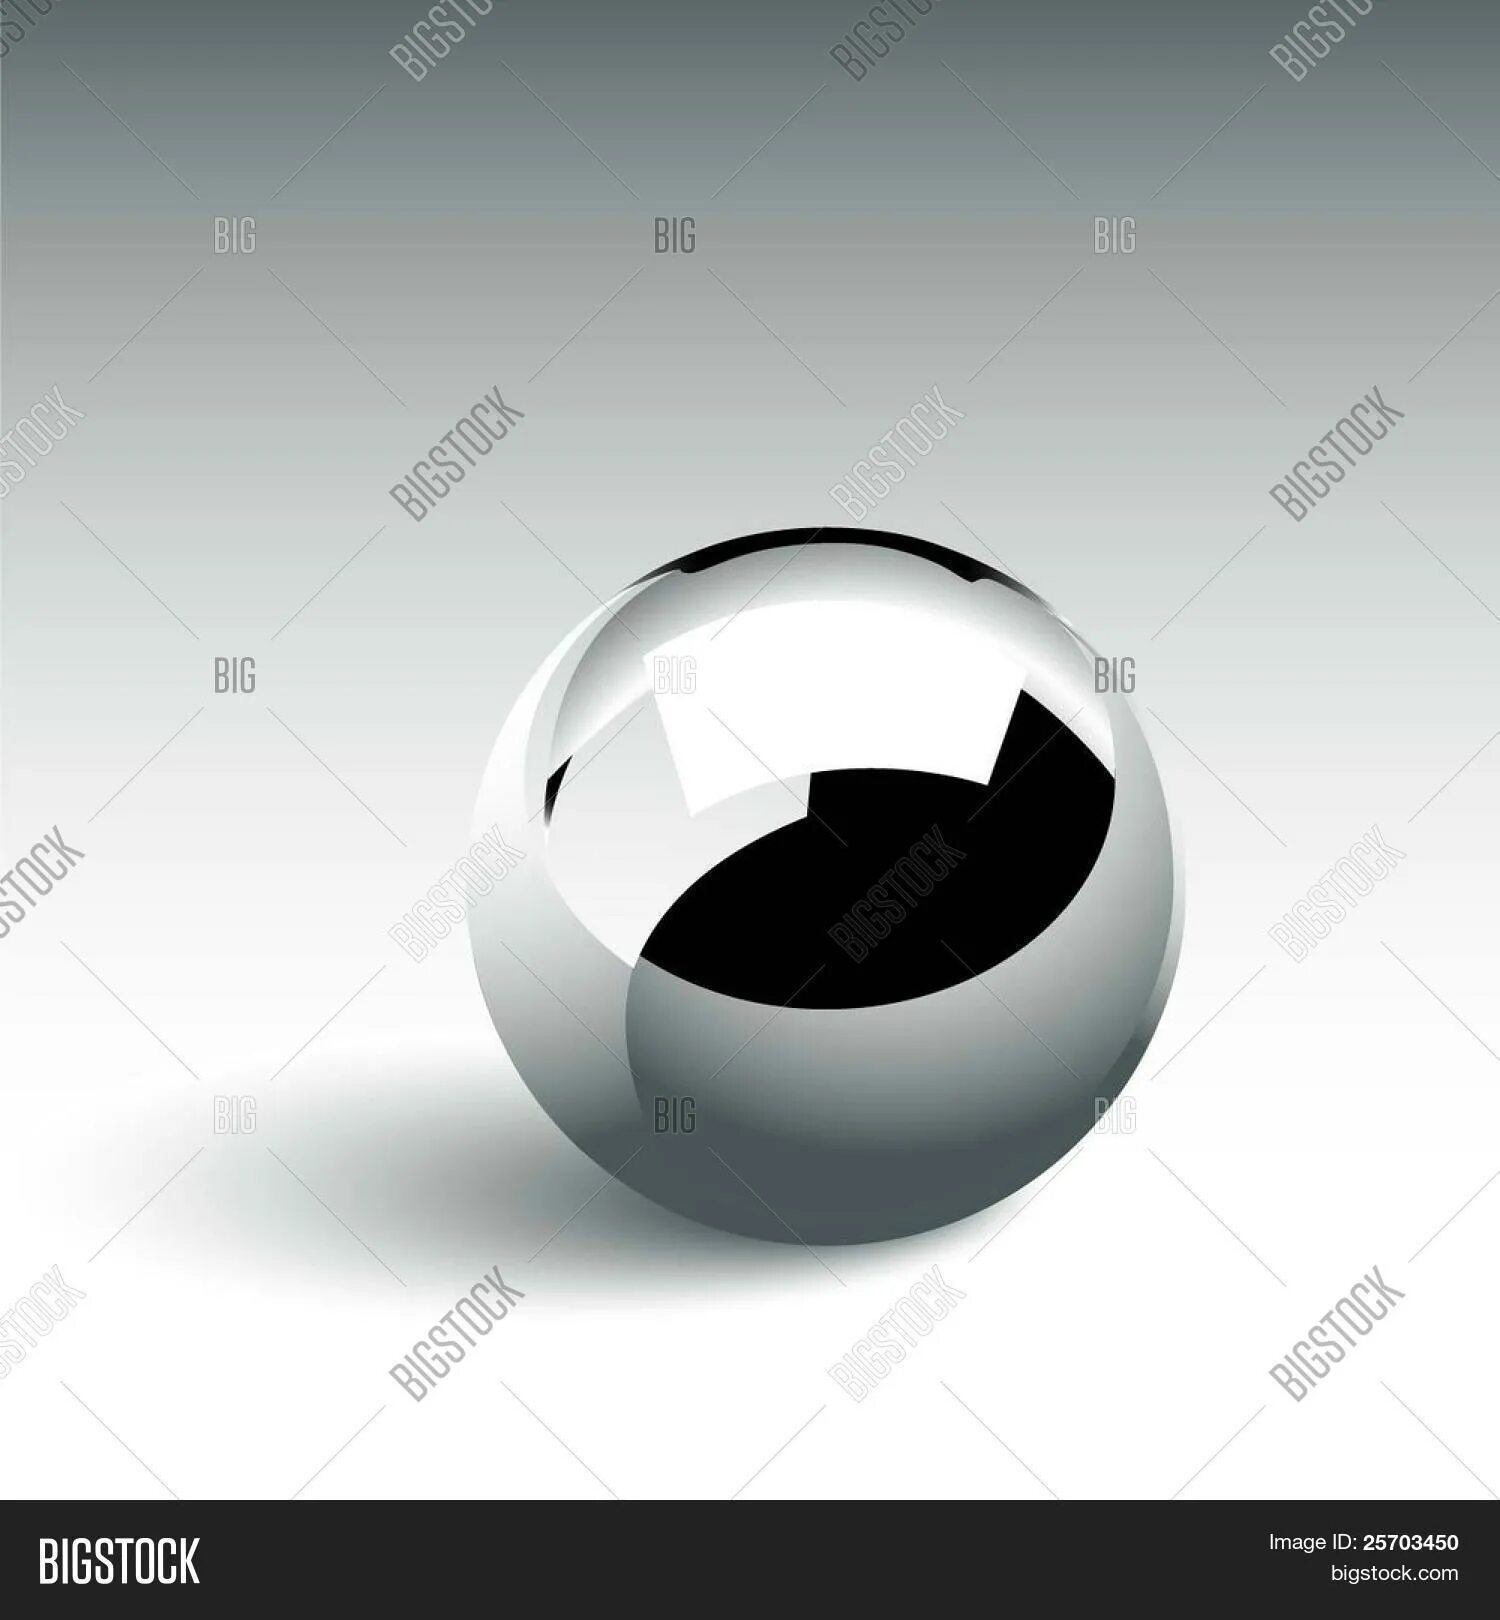 Рисунок на металлическом шаре. Хромированный металлический шар. Металлический шар в векторе. Металлический шарик вектор. Металлический шар карандашом.